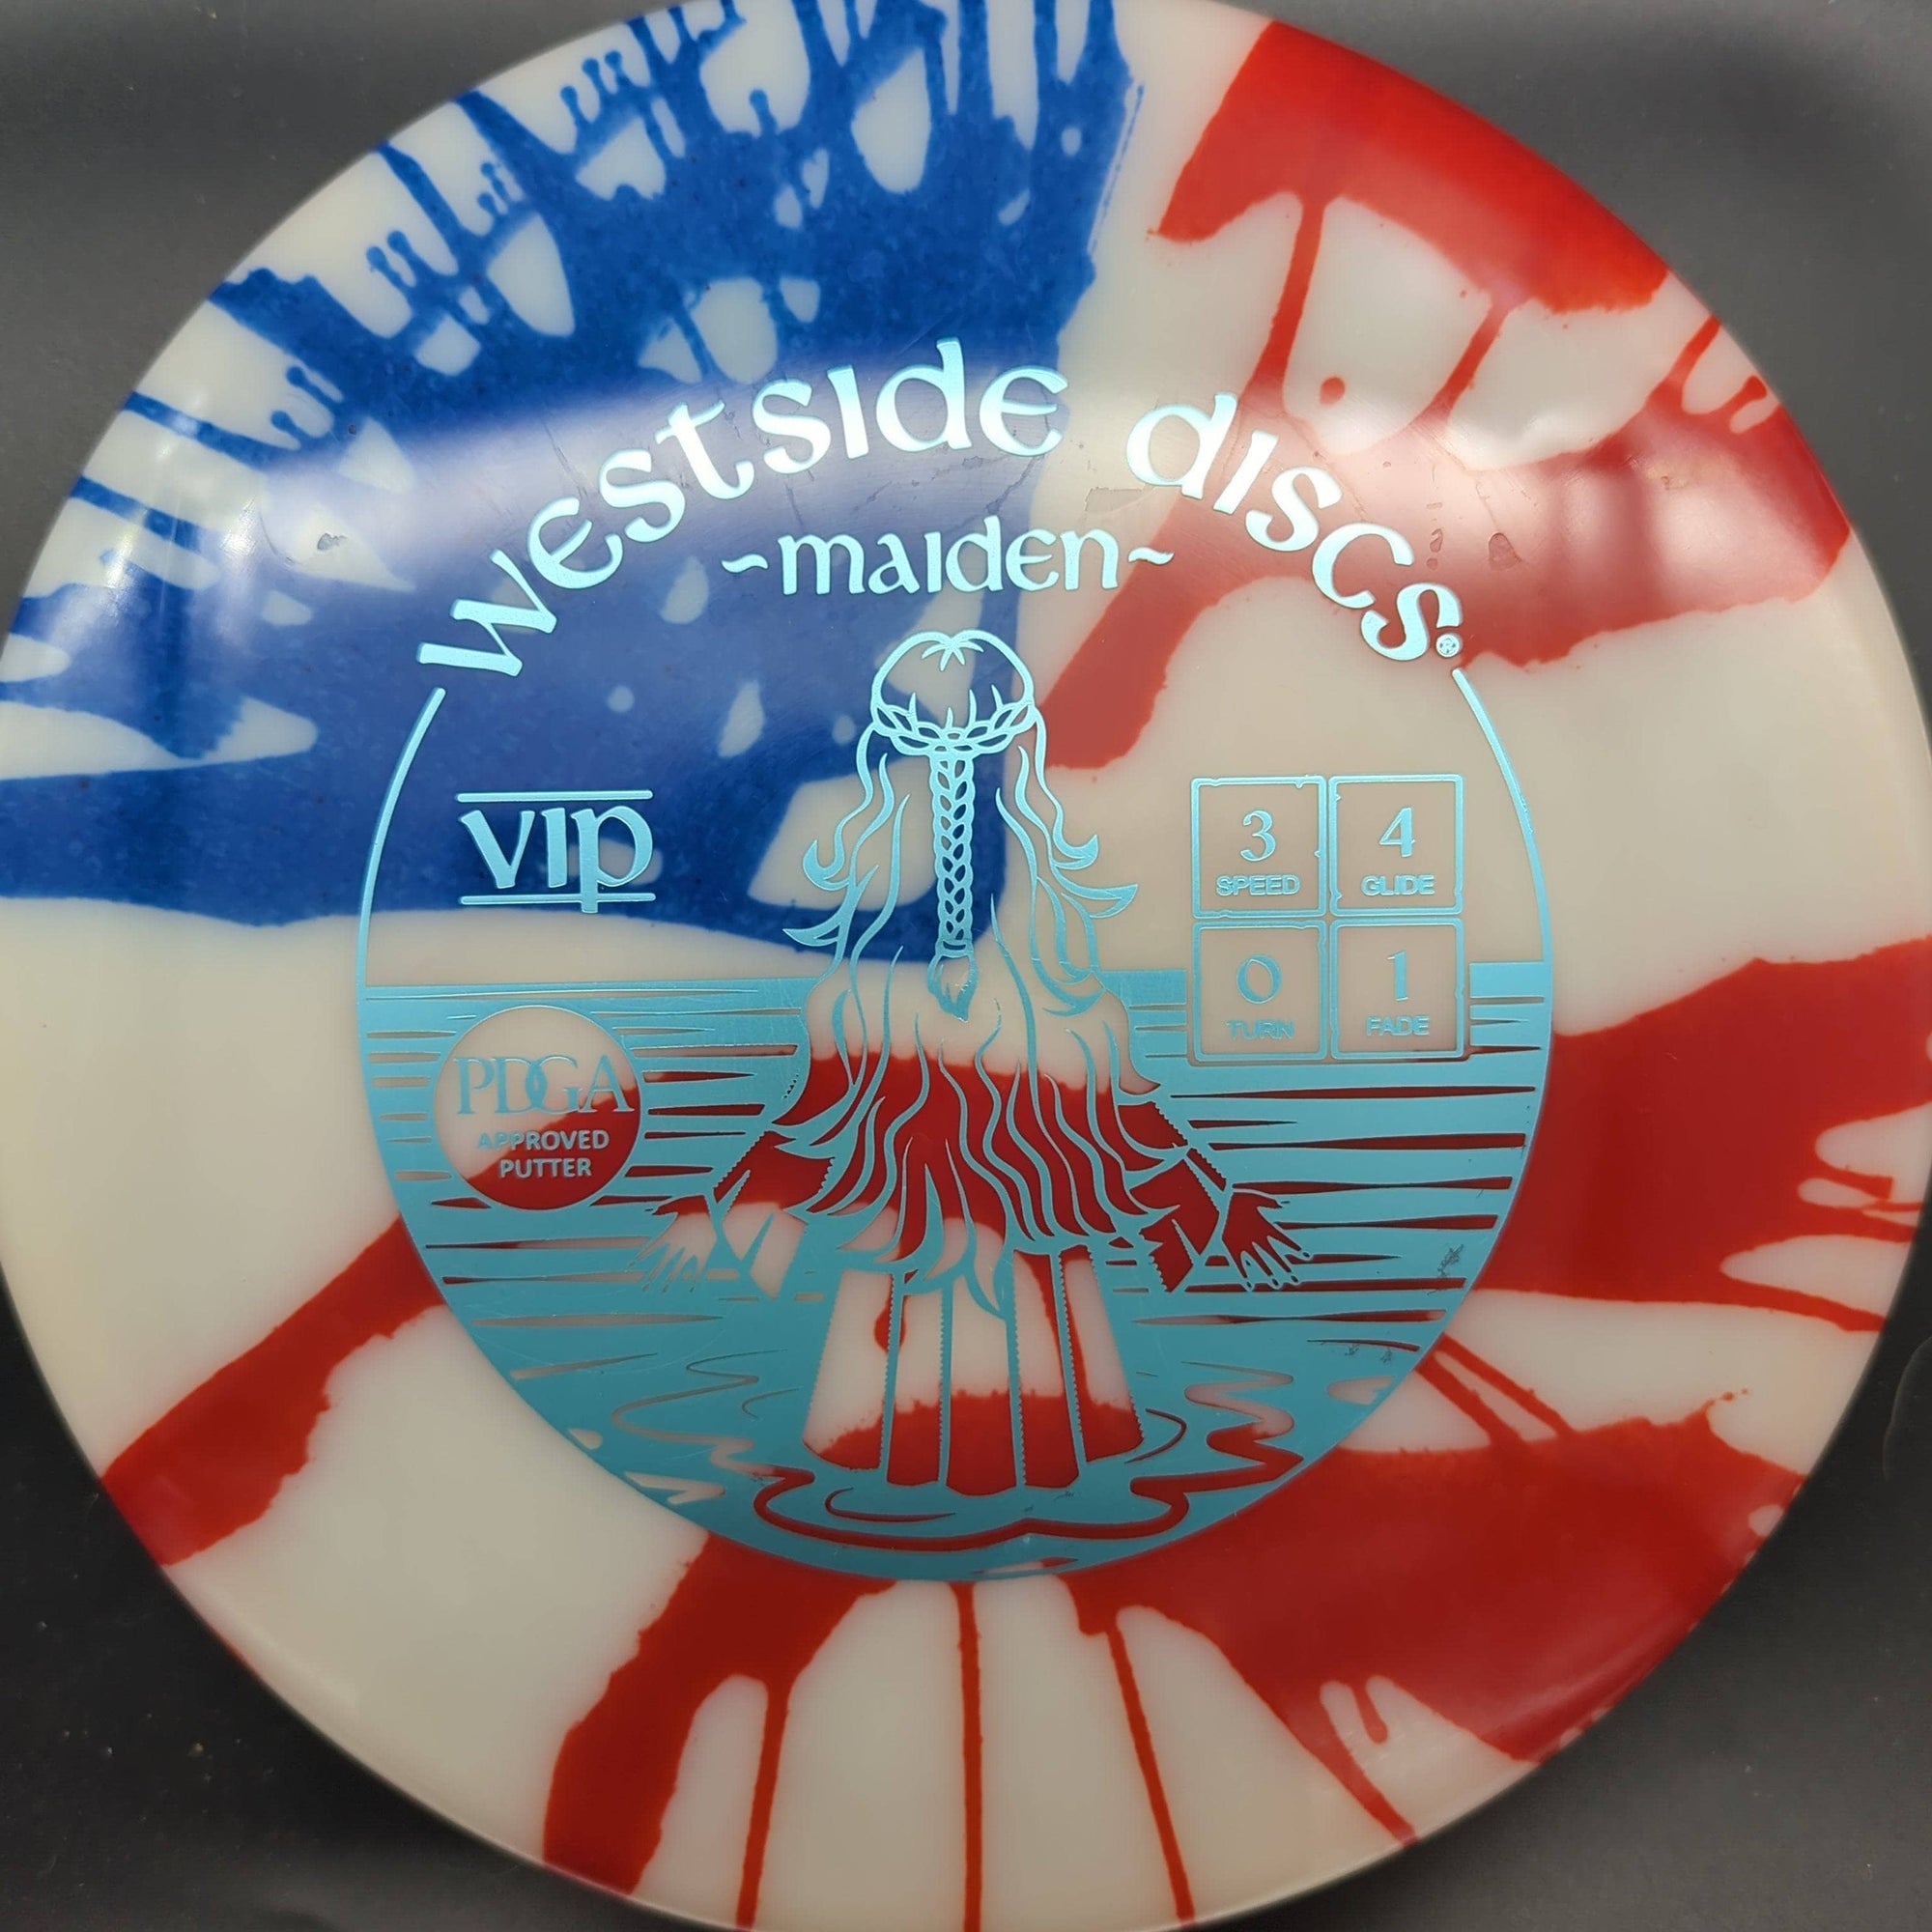 Westside Discs Putter White Blue Stamp 173g Maiden, VIP, MyDye